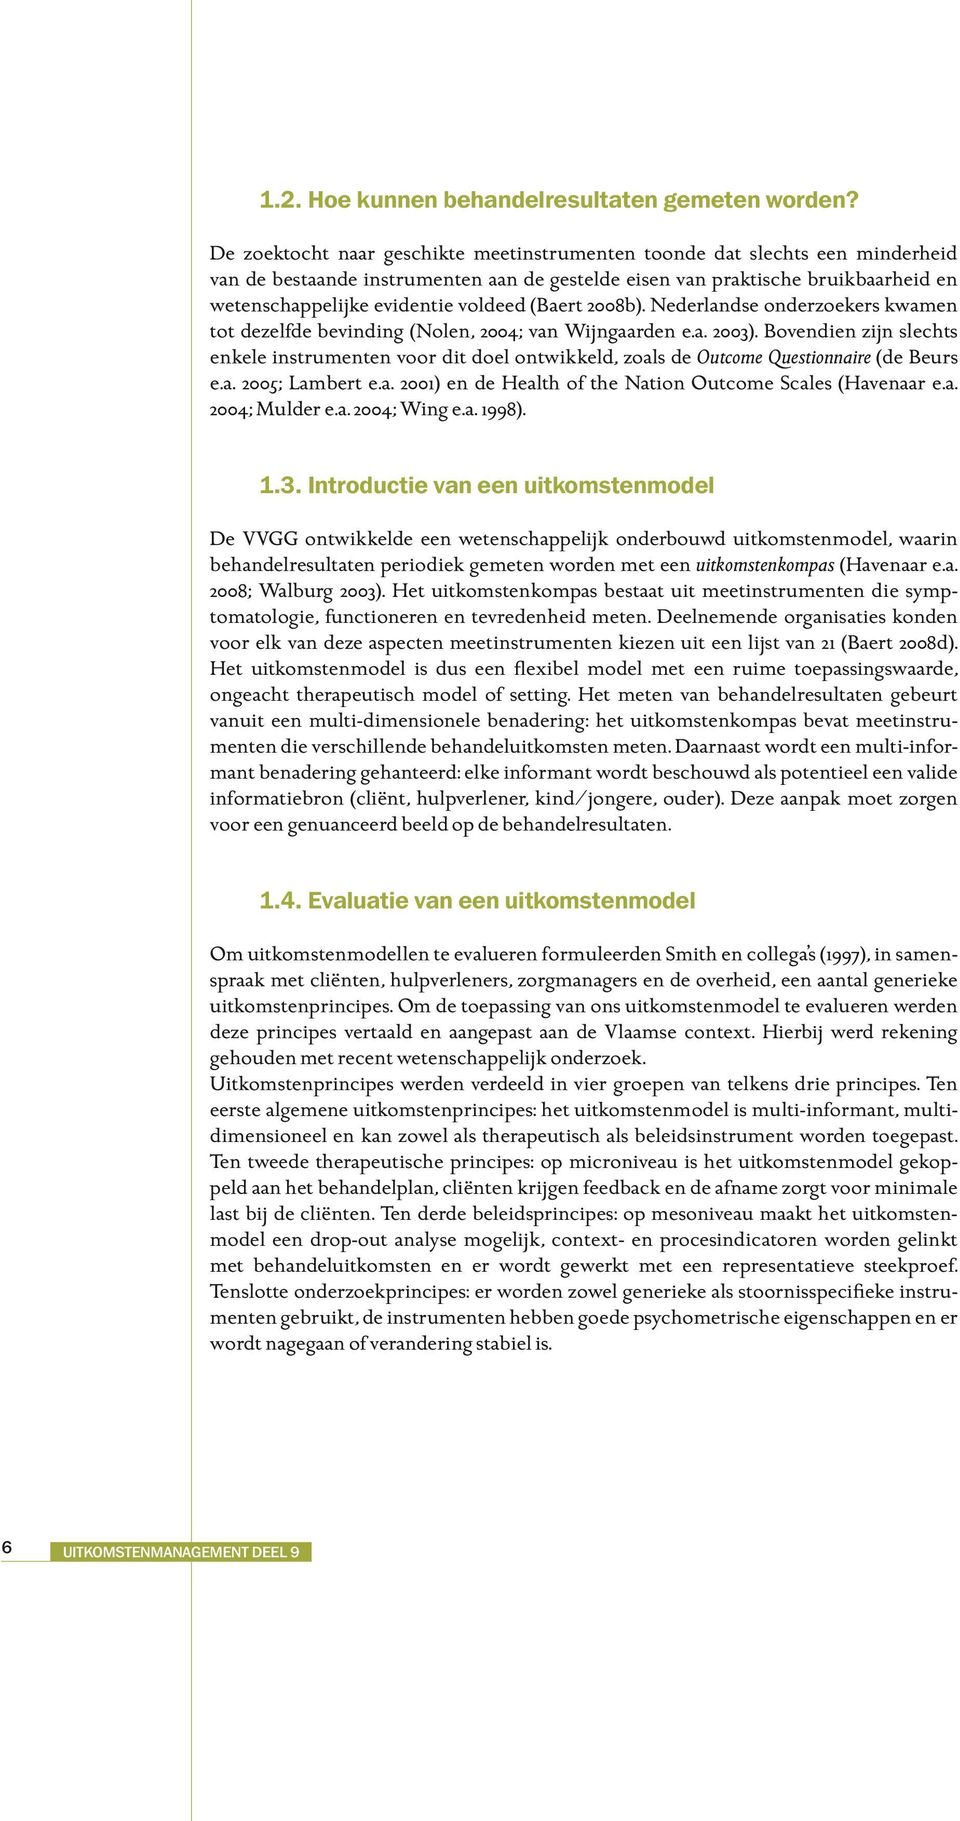 (Baert 2008b). Nederlandse onderzoekers kwamen tot dezelfde bevinding (Nolen, 2004; van Wijngaarden e.a. 2003).